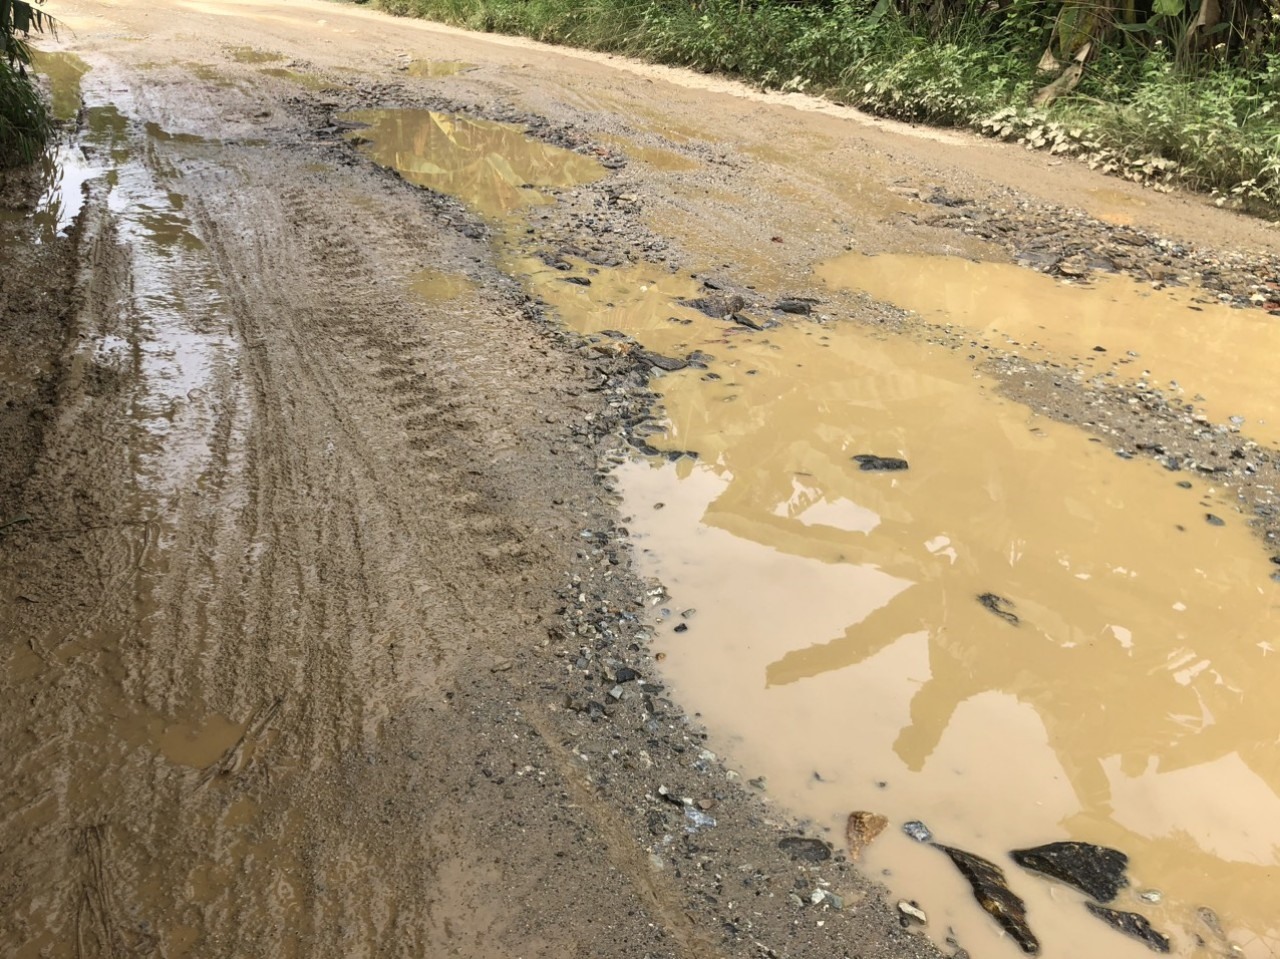 Đường đi làm mỗi ngày của chị Thuý Vân. 10km thì mất khoảng 7km đường xấu, chưa kể ngày mưa to nước ngập không biết lối nào để đi. Ảnh: Nhân vật cung cấp.